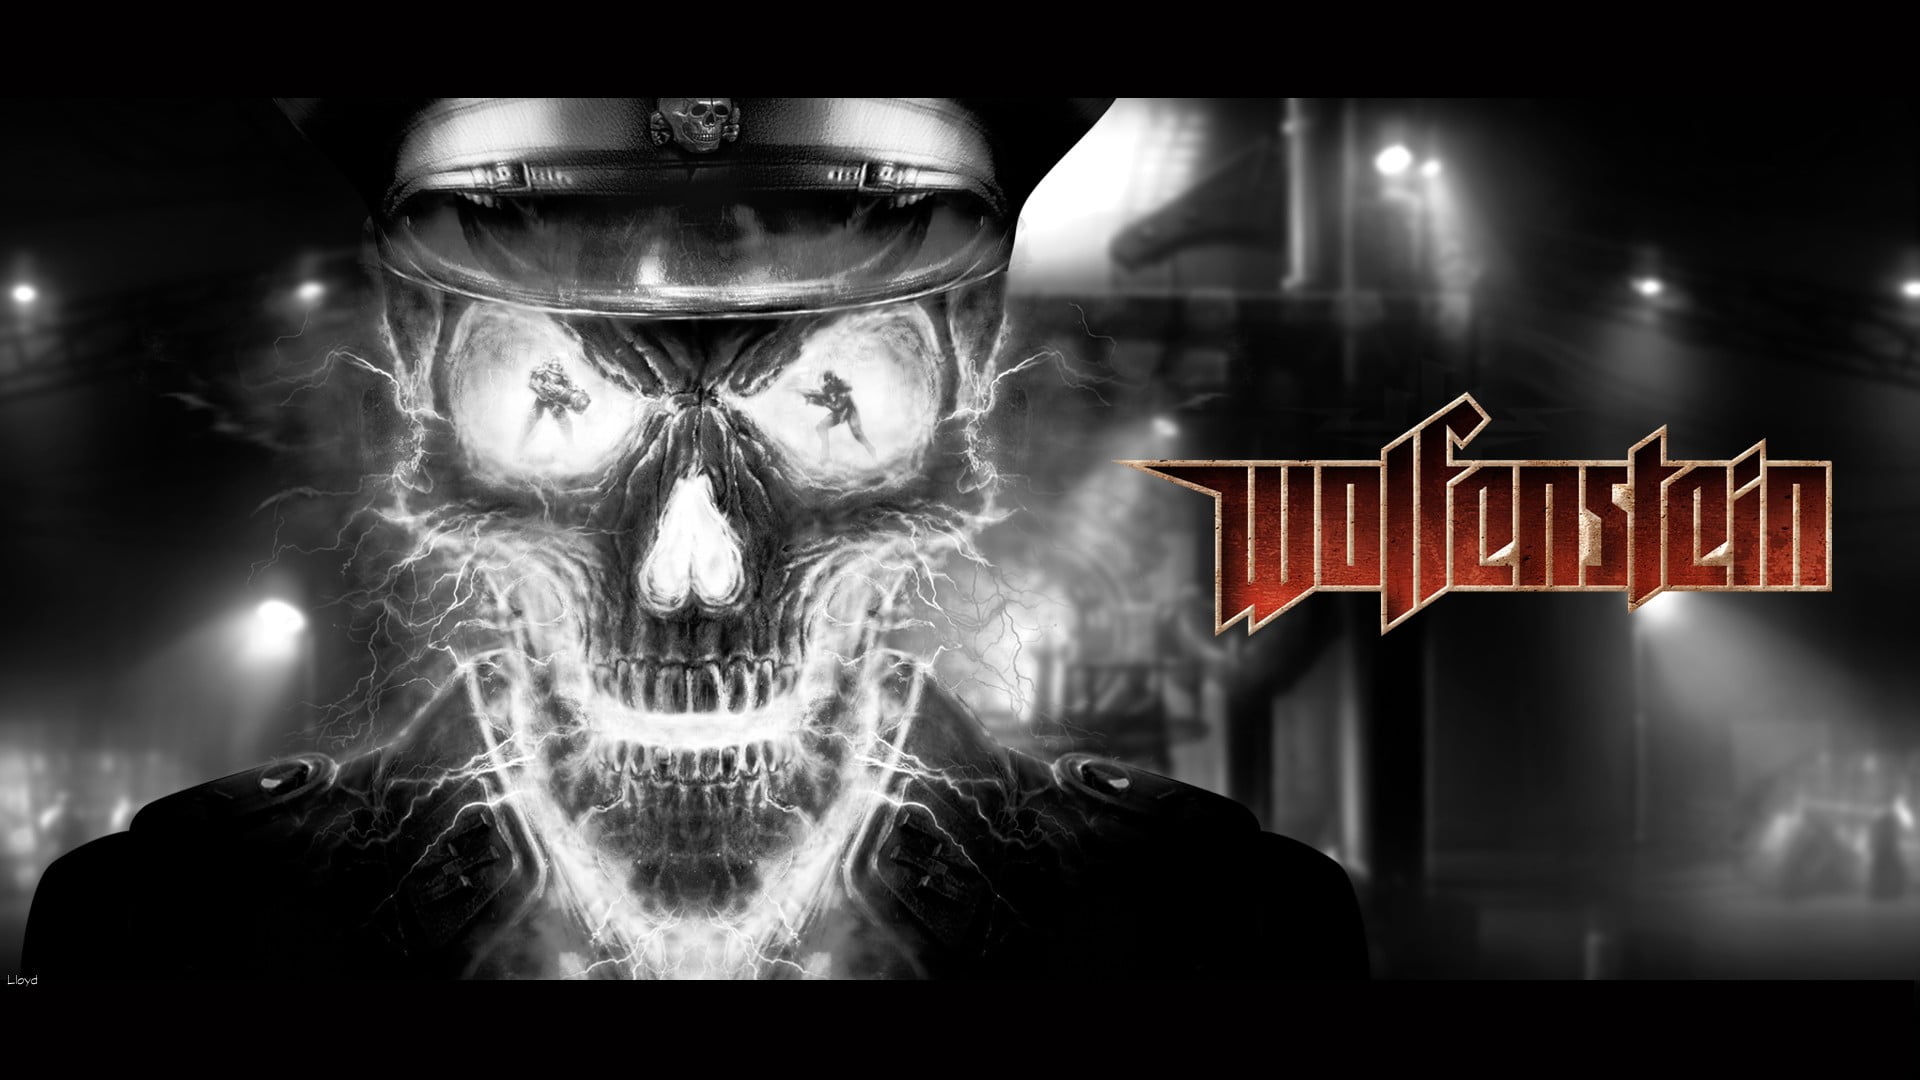 Wolfenstein digital wallpaper, video games, skull, front view